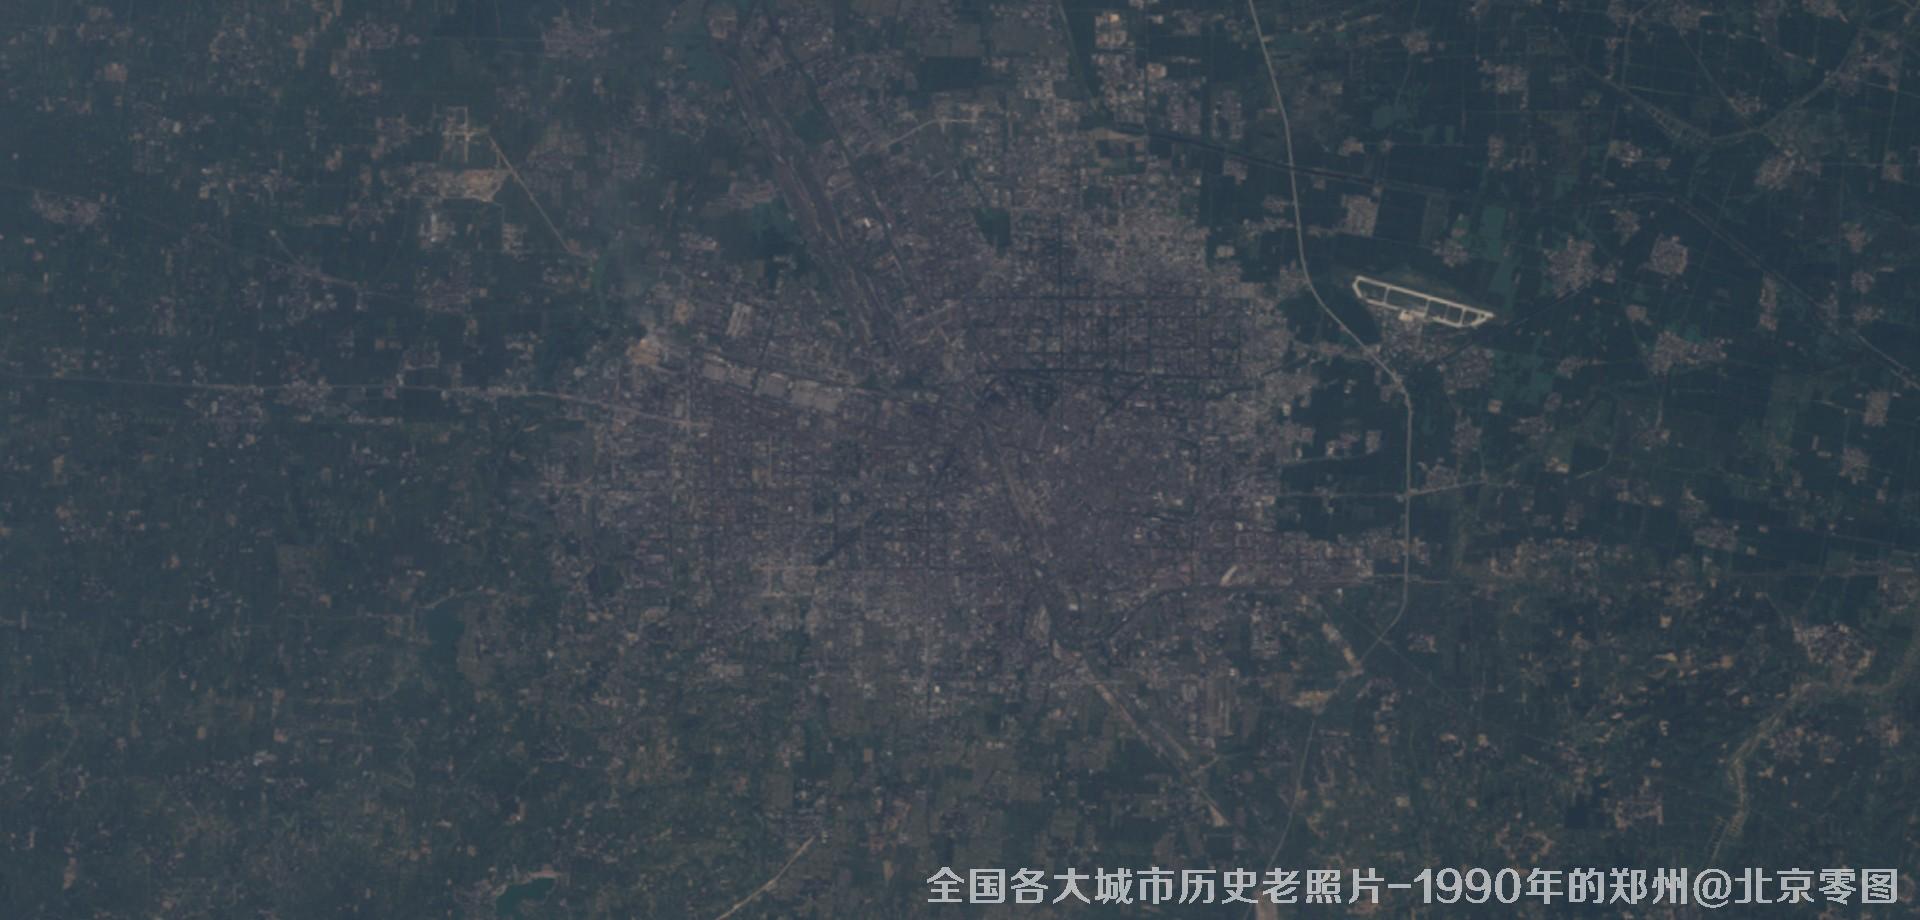 美国Landsat卫星拍摄的1990年的河南省郑州市历史卫星影像图